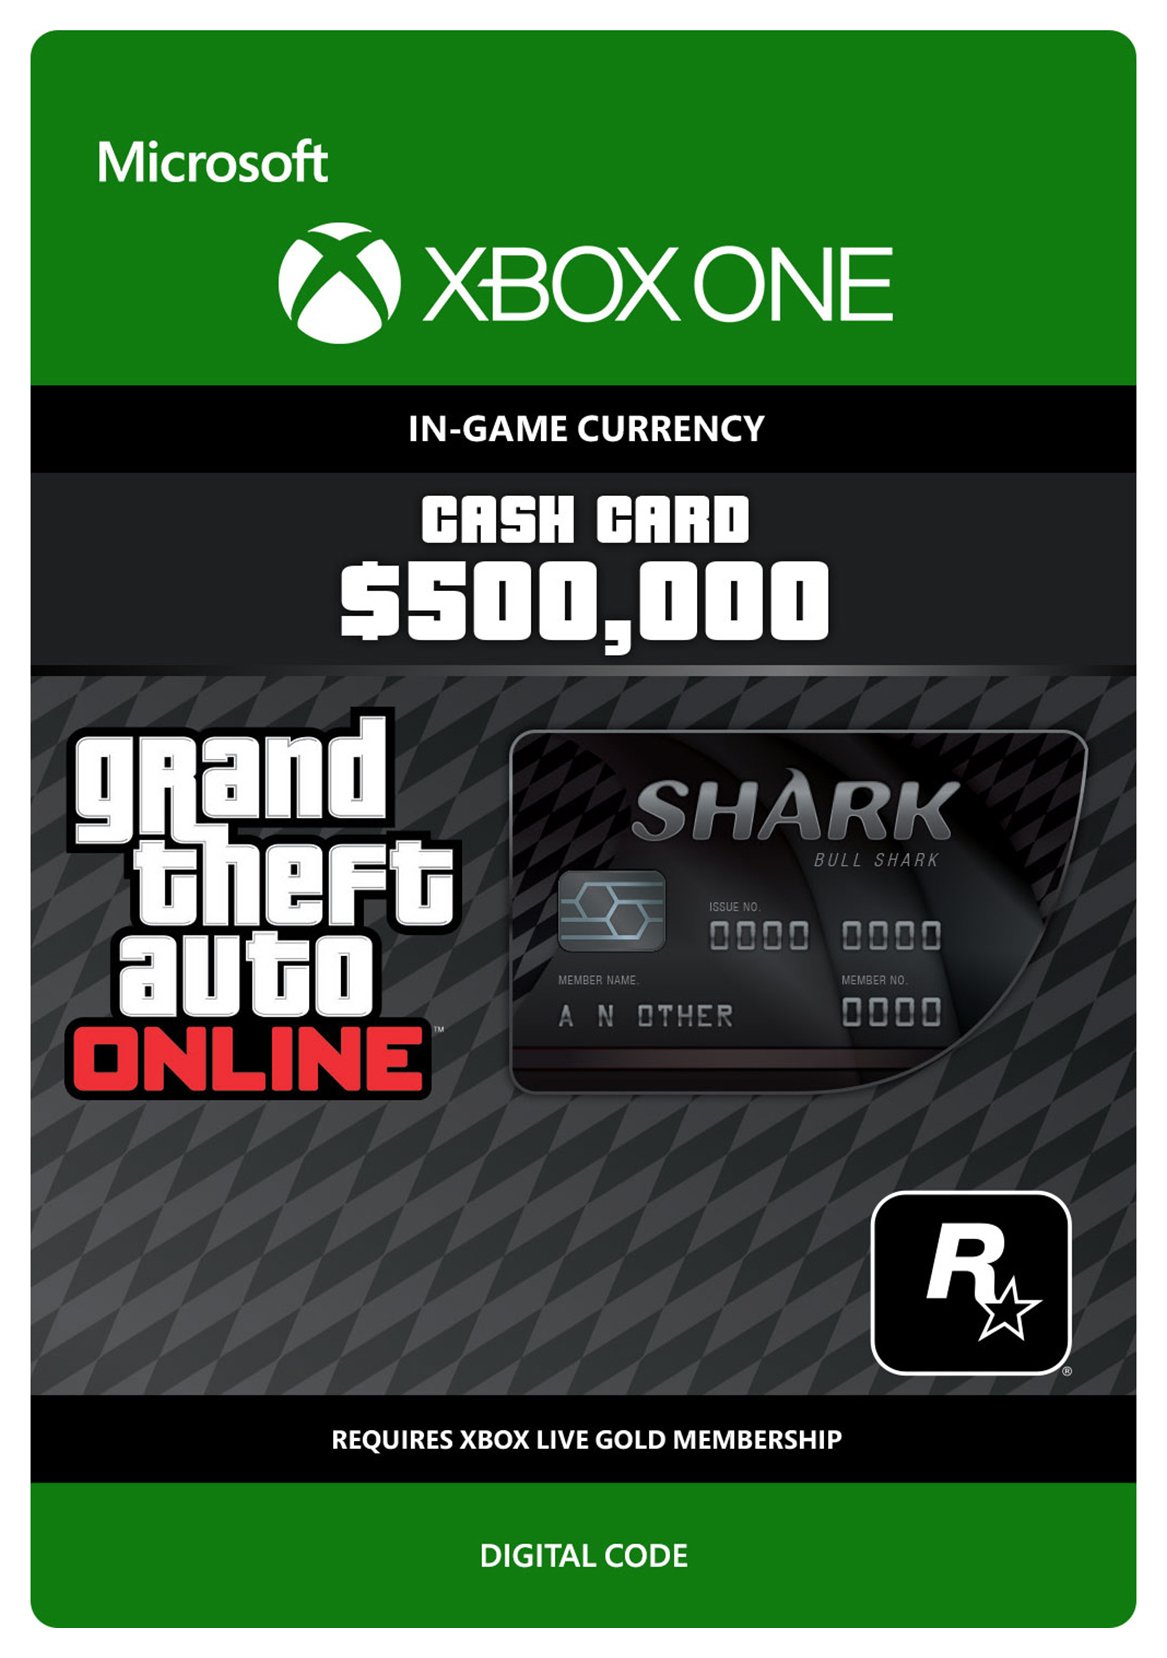 Grand Theft Auto V Bull Shark Xbox One Cash Card